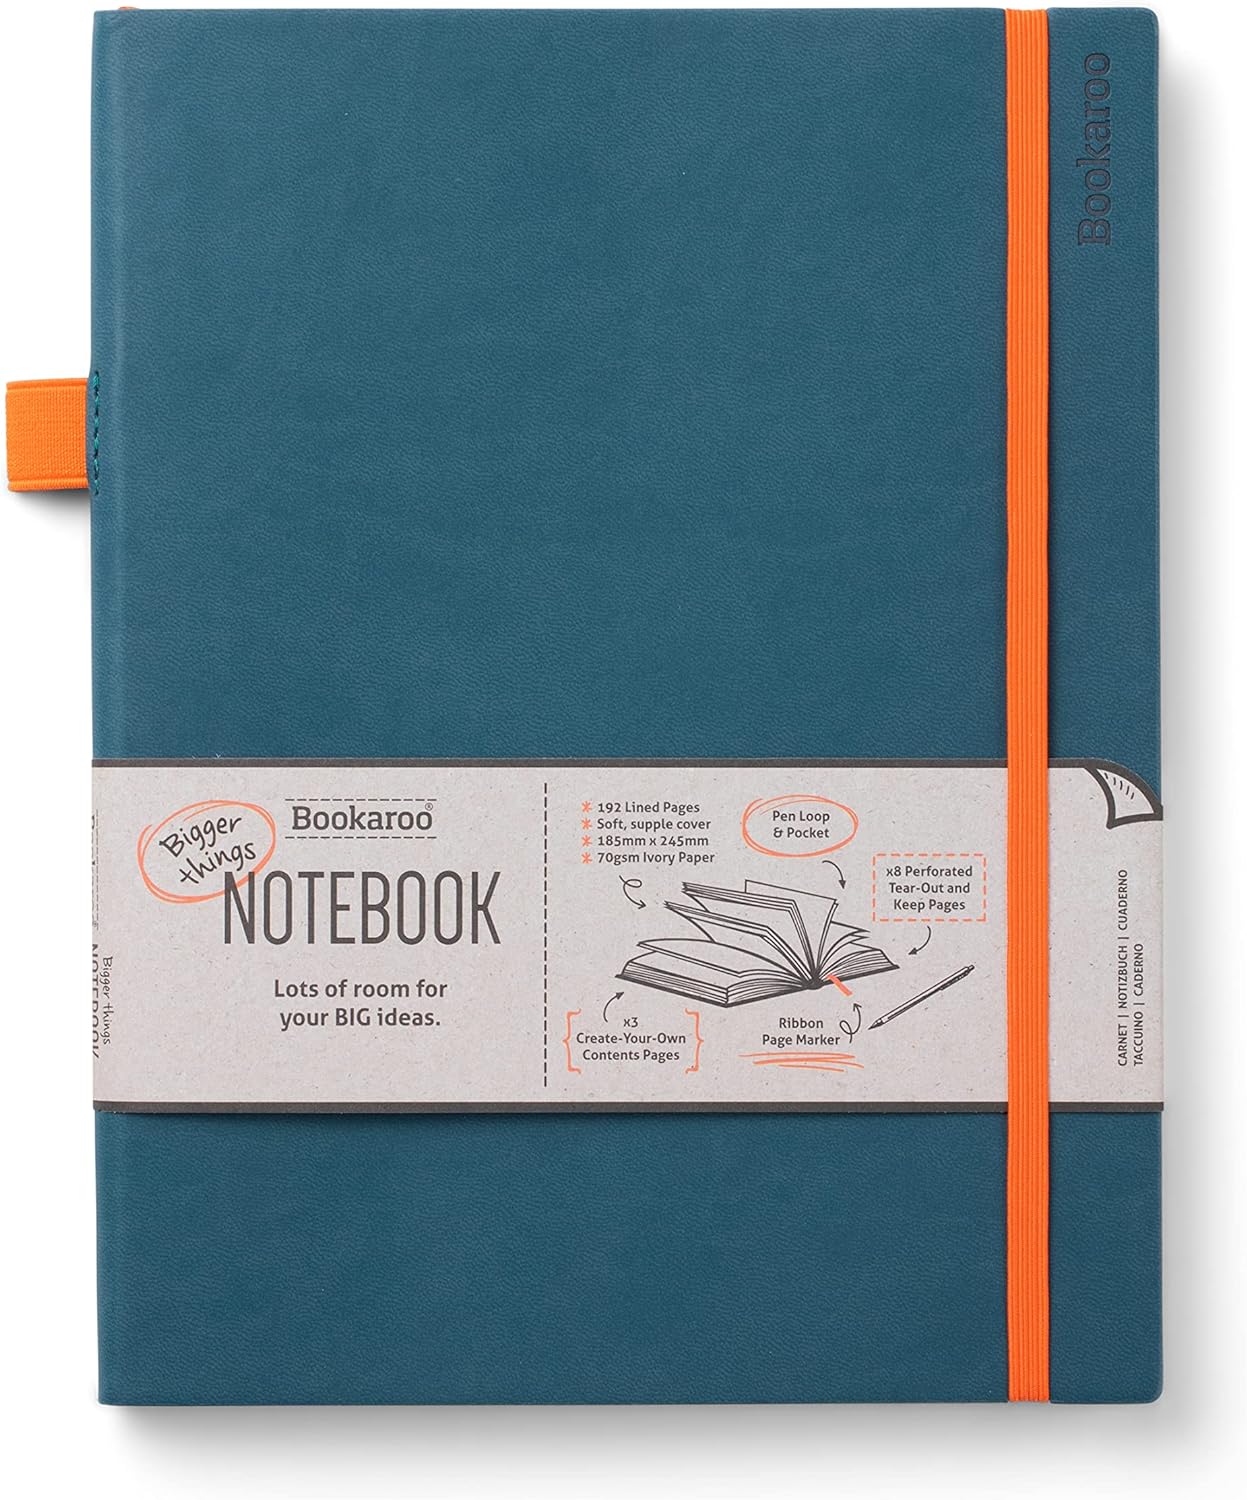 Bookaroo Bigger Things Notebook Journal Teal